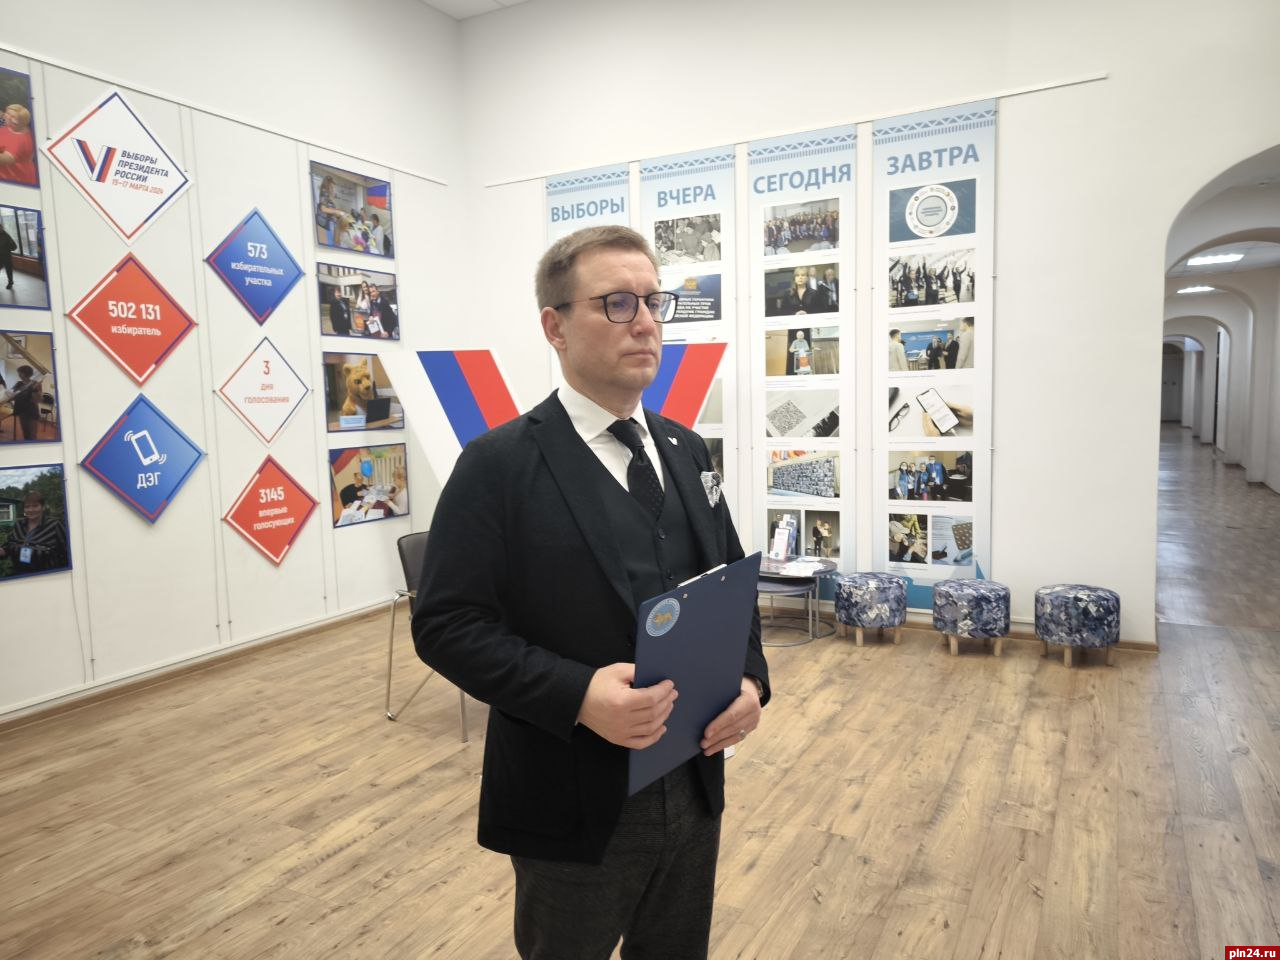 Голосование на выборах президента в Псковской области прошло без нарушений - Игорь Сопов 